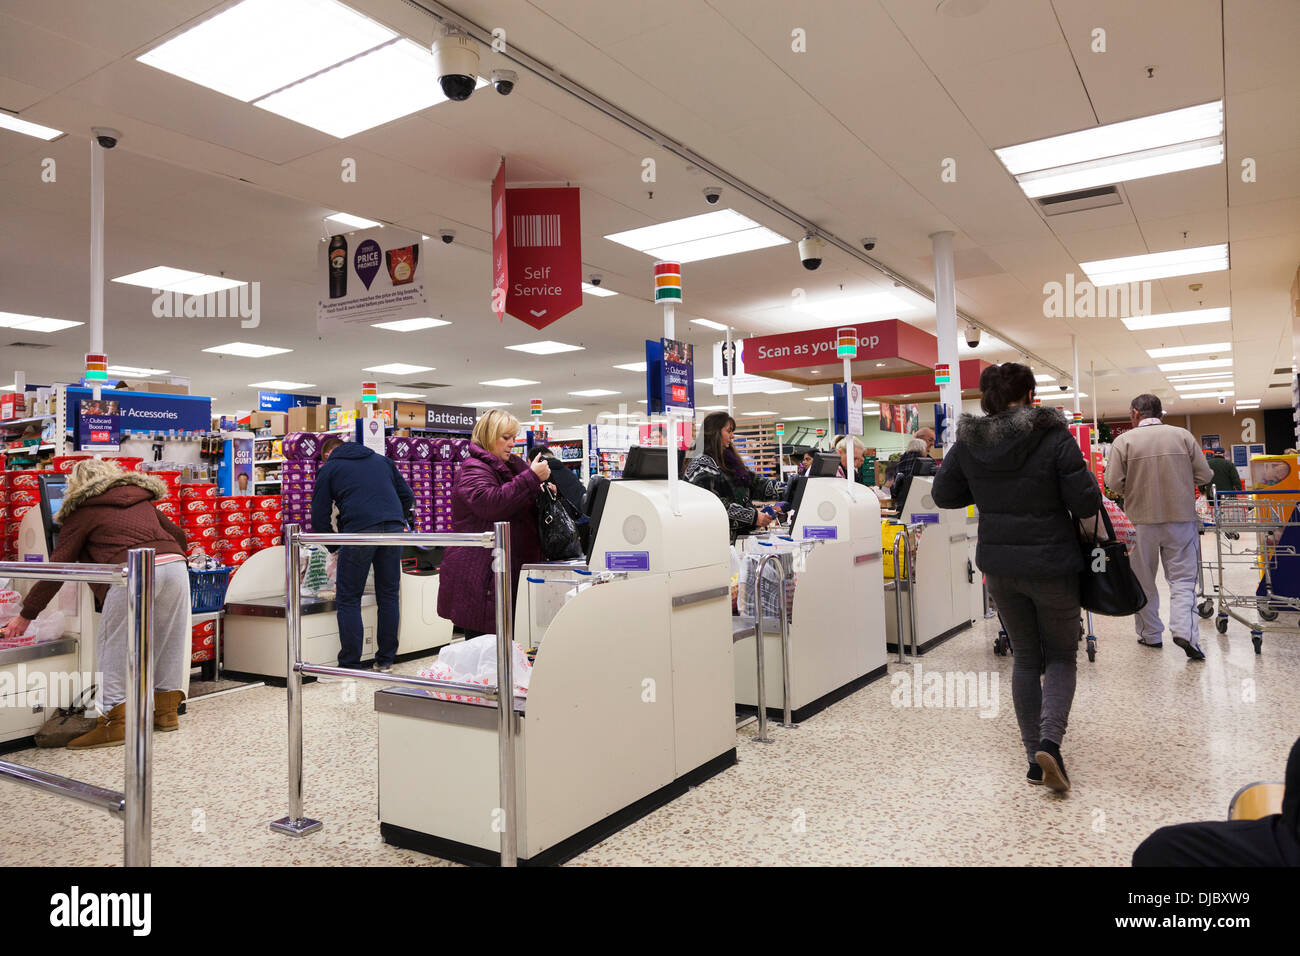 Kunden durch Self-service Check-out Bereich bei Tesco-Supermarkt. Stockfoto